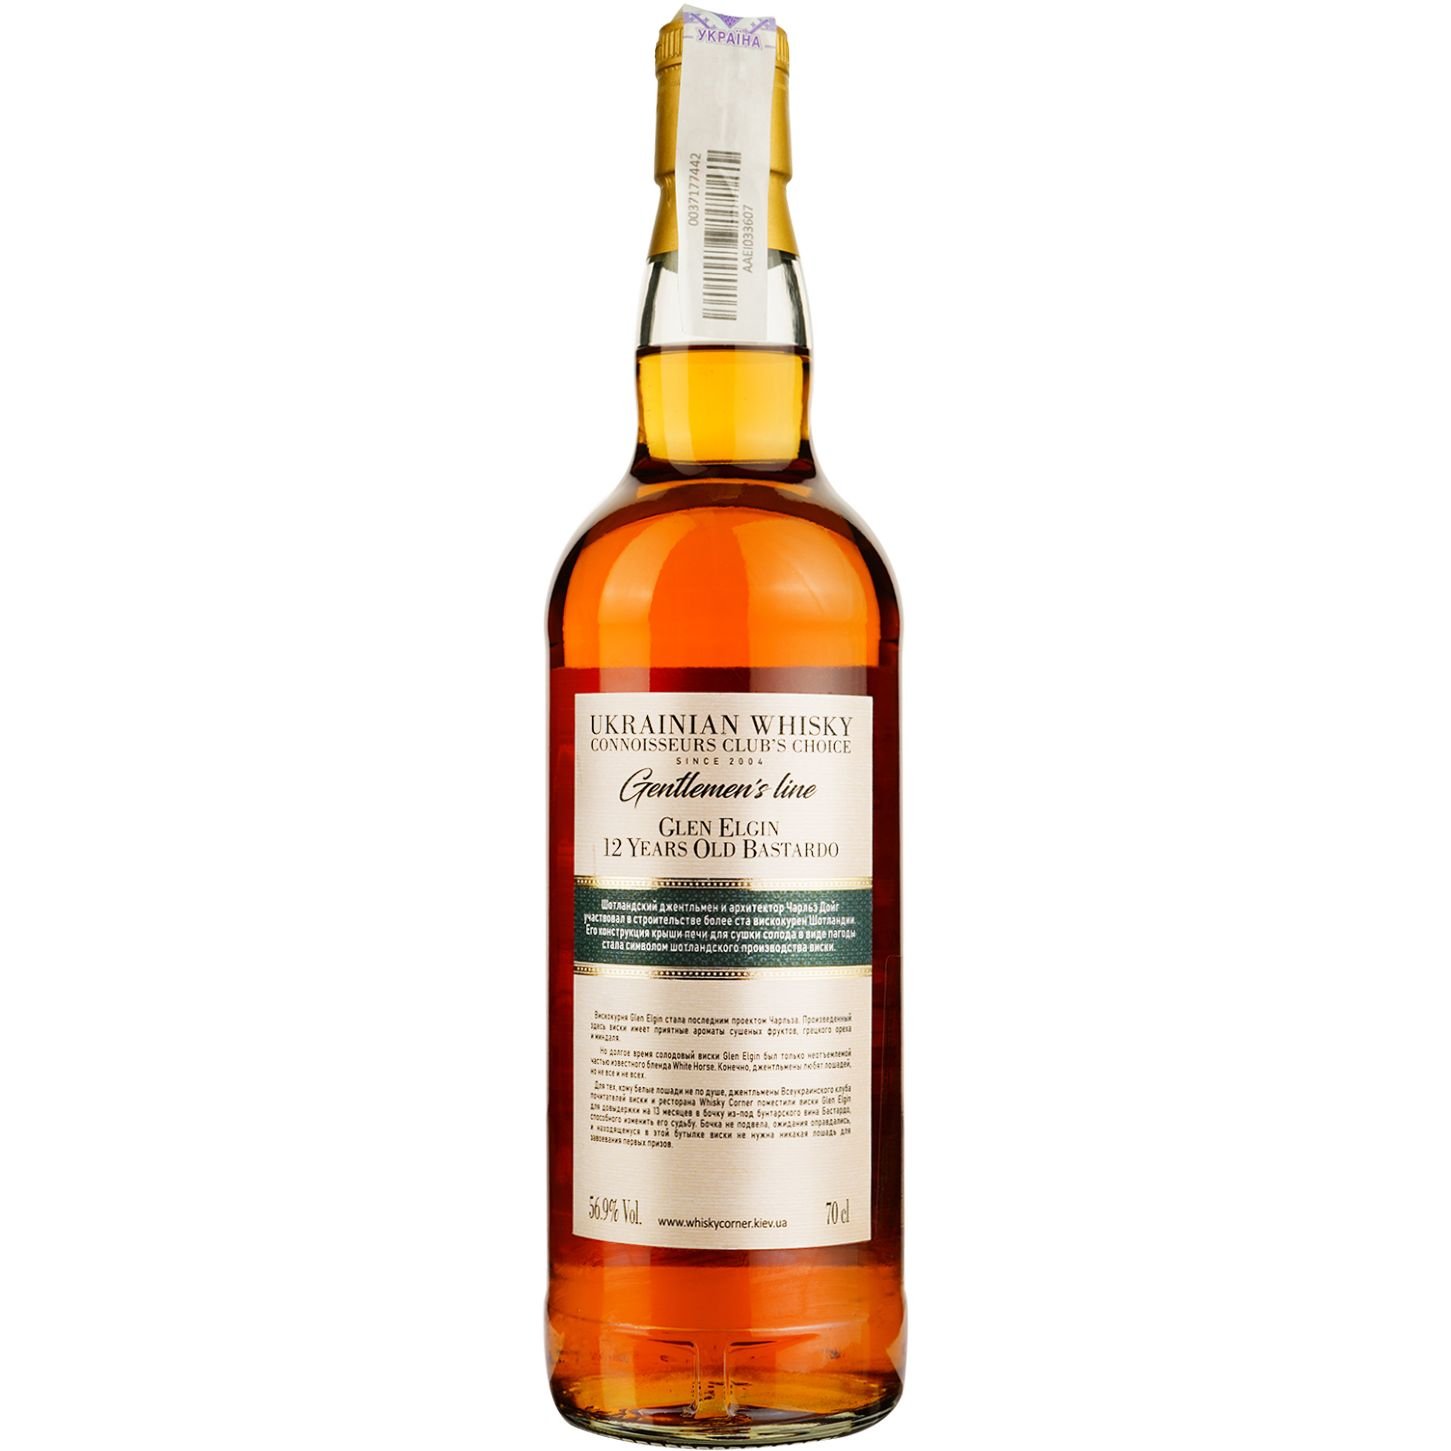 Віскі Glen Elgin 12 Years Old Bastardo Single Malt Scotch Whisky, у подарунковій упаковці, 56,9%, 0,7 л - фото 4